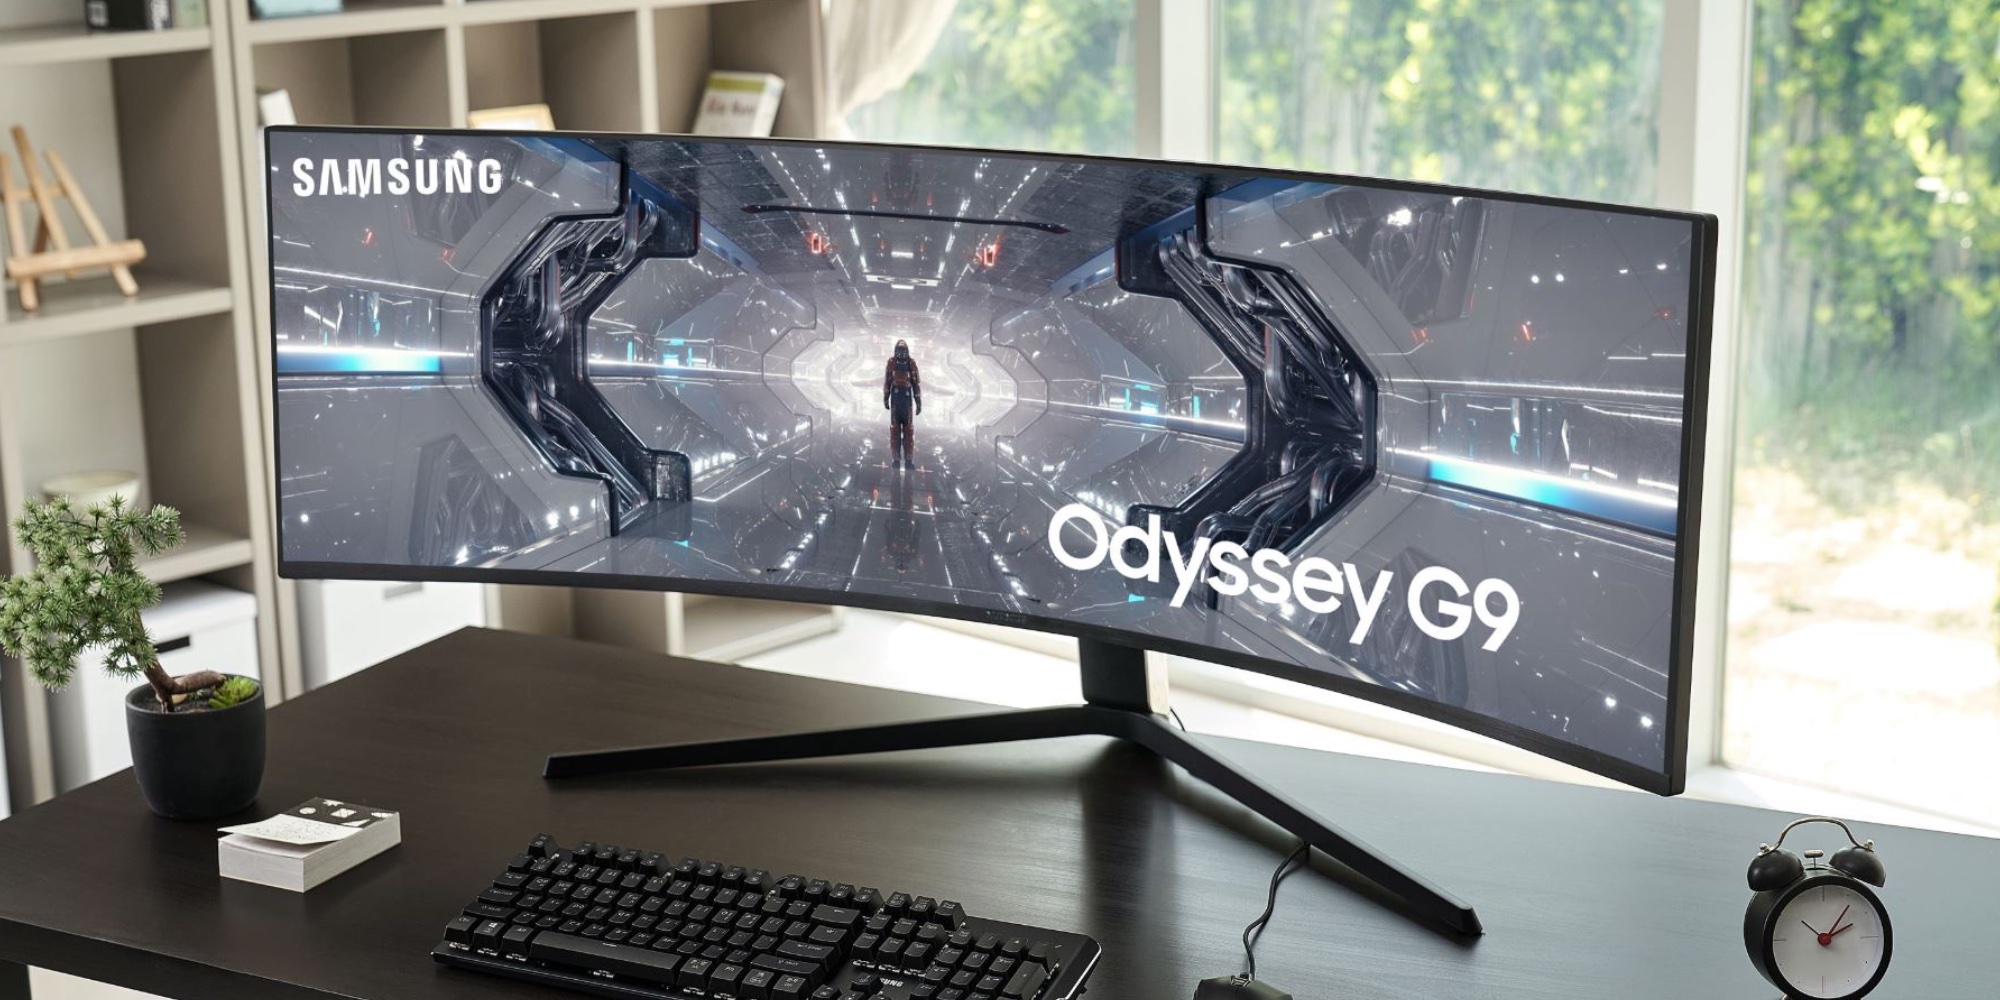 Samsung Odyssey G9 Update Firmware